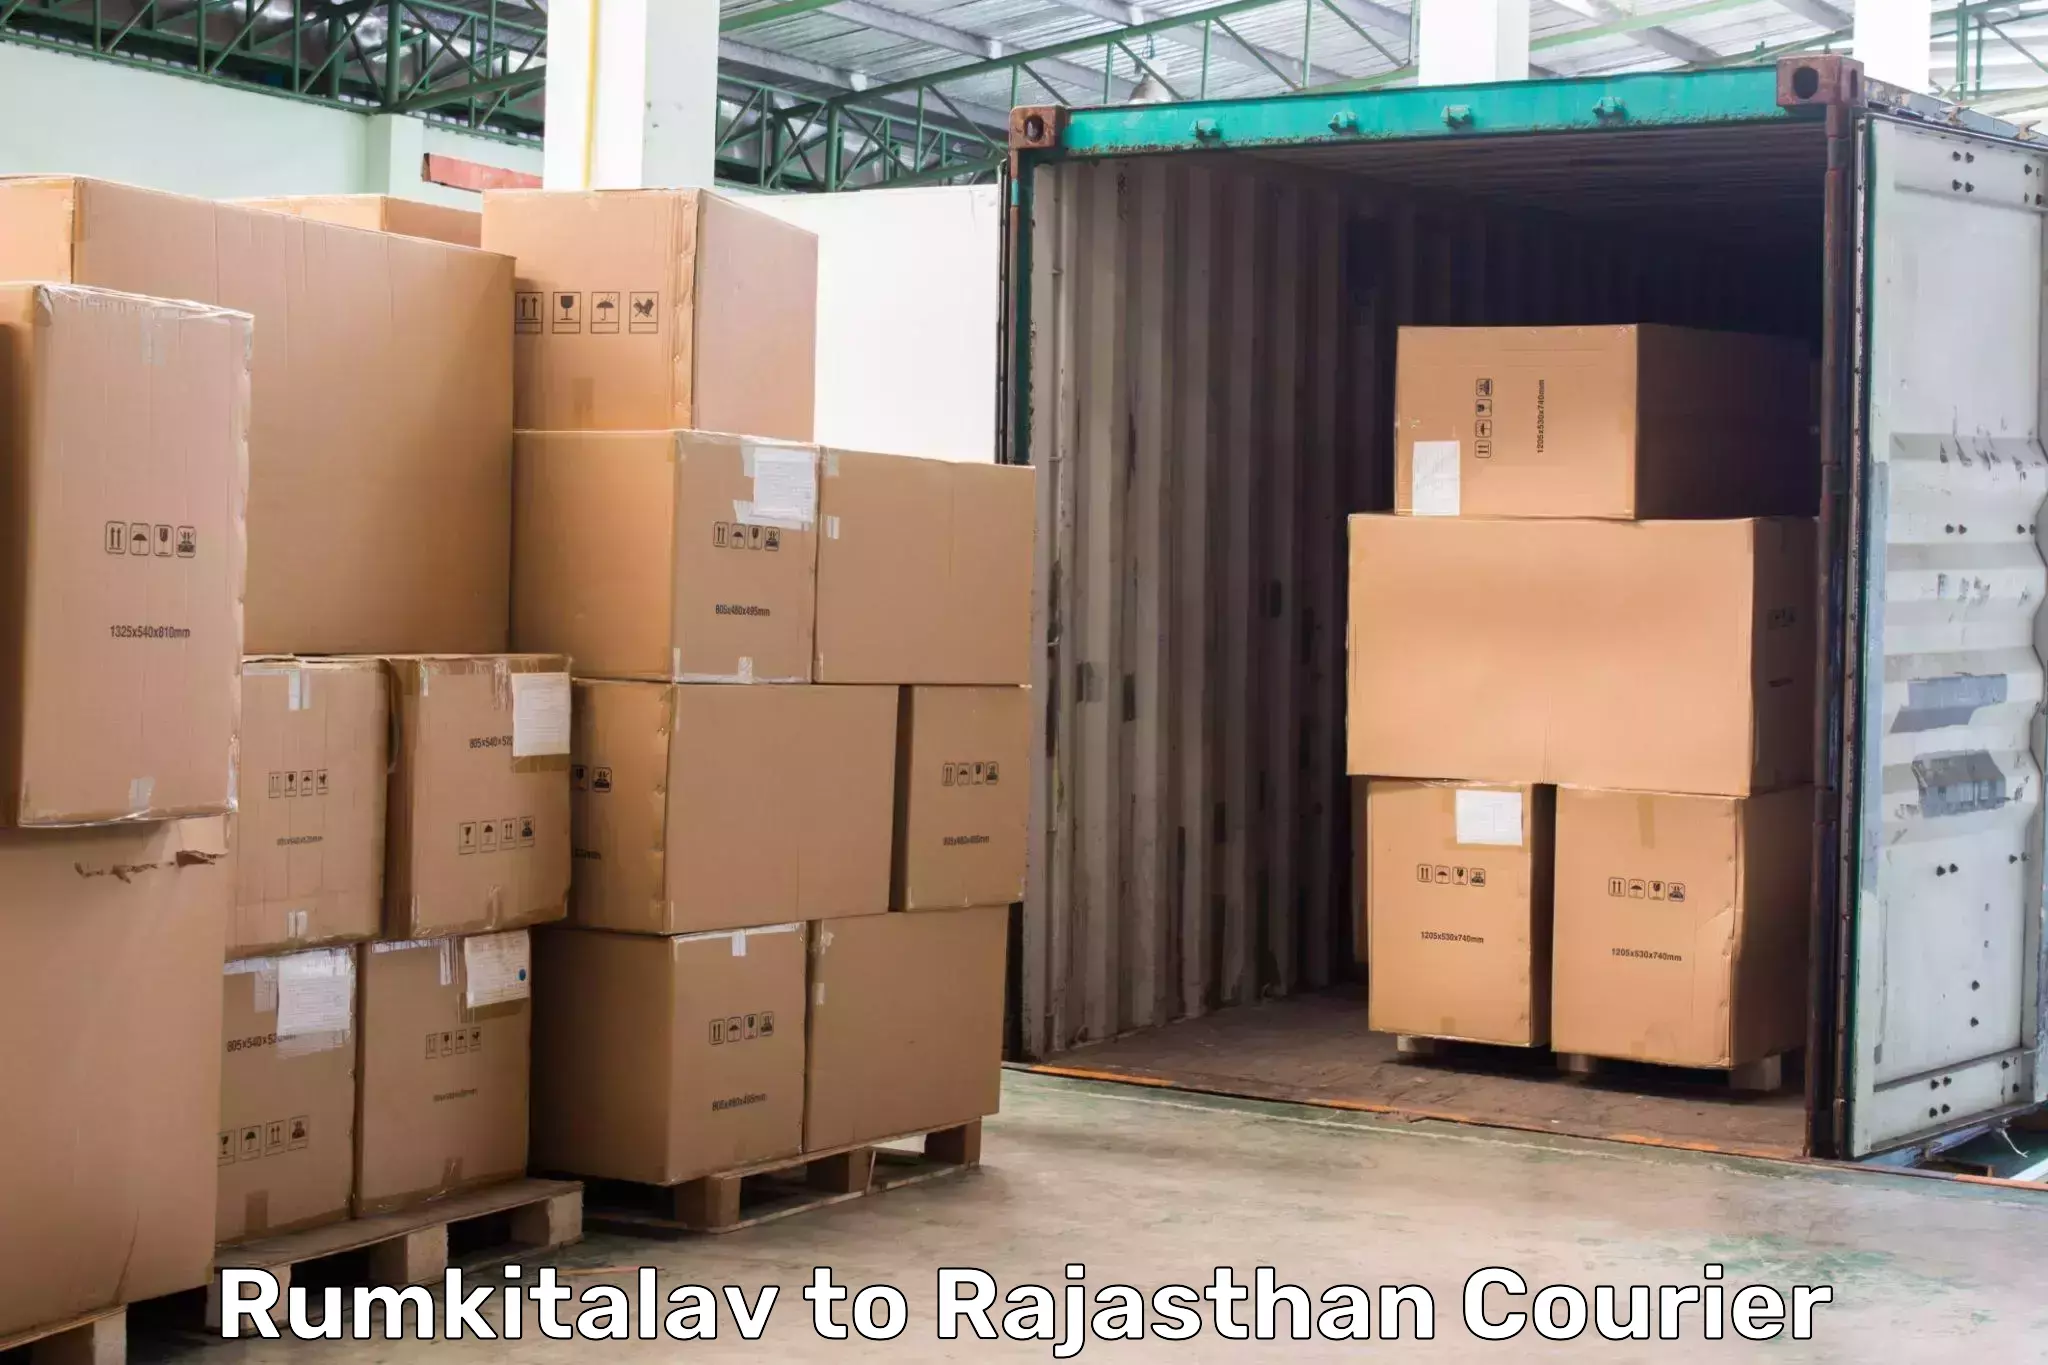 High-capacity parcel service Rumkitalav to Viratnagar